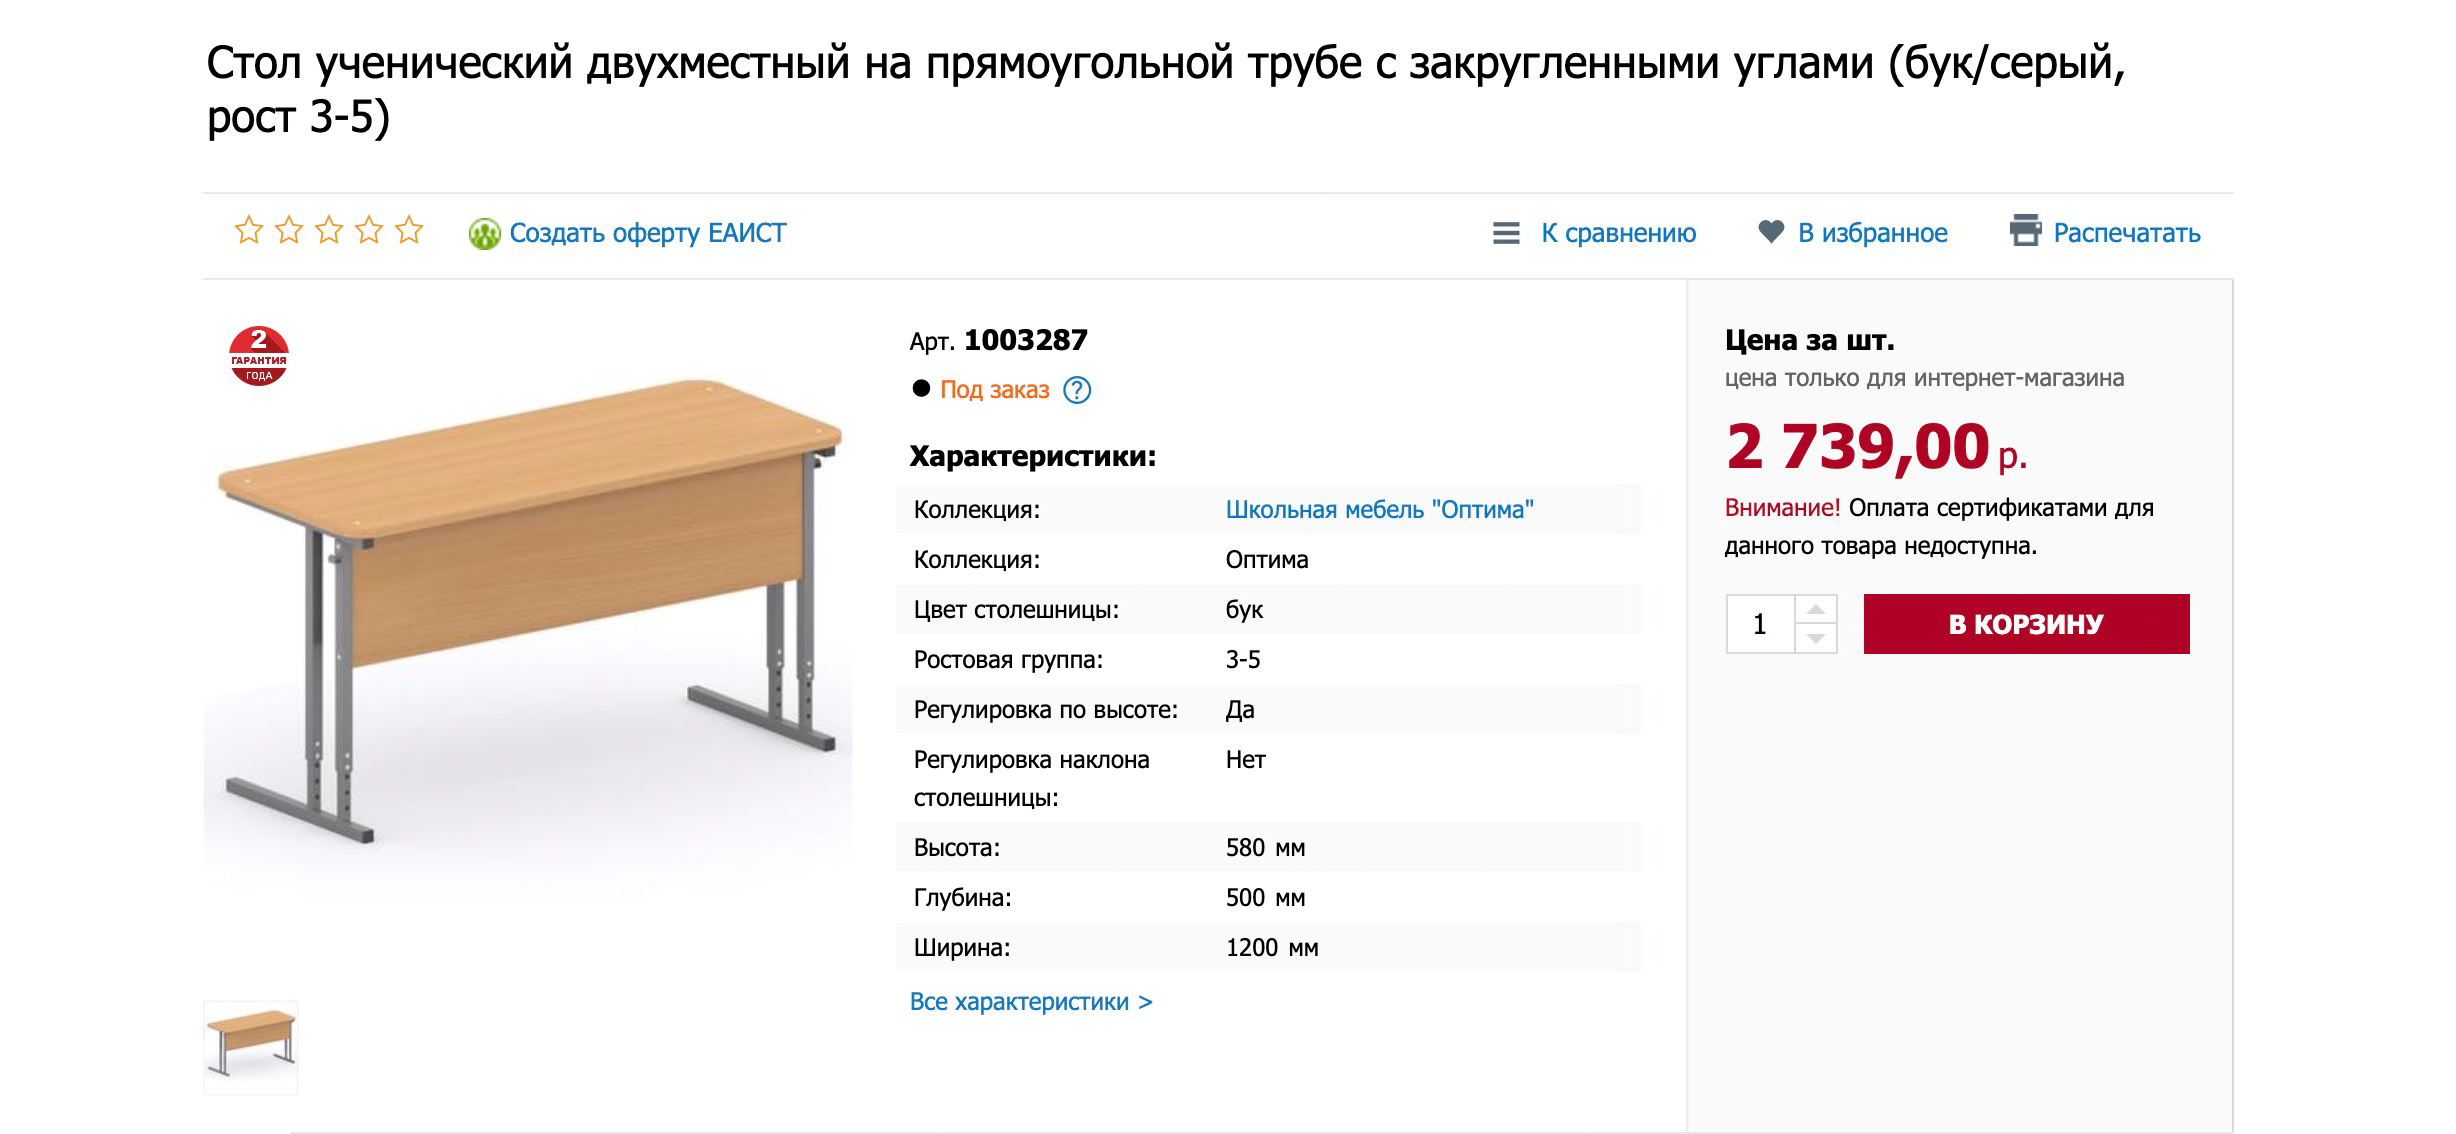 Парта для первоклассника стоит 2800 рублей, стул к ней — еще 1500 рублей. Такие же будут стоять в школьном классе. Заказала через интернет с бесплатной доставкой. Даже если такая парта испортится, ерунда — заменим на новую